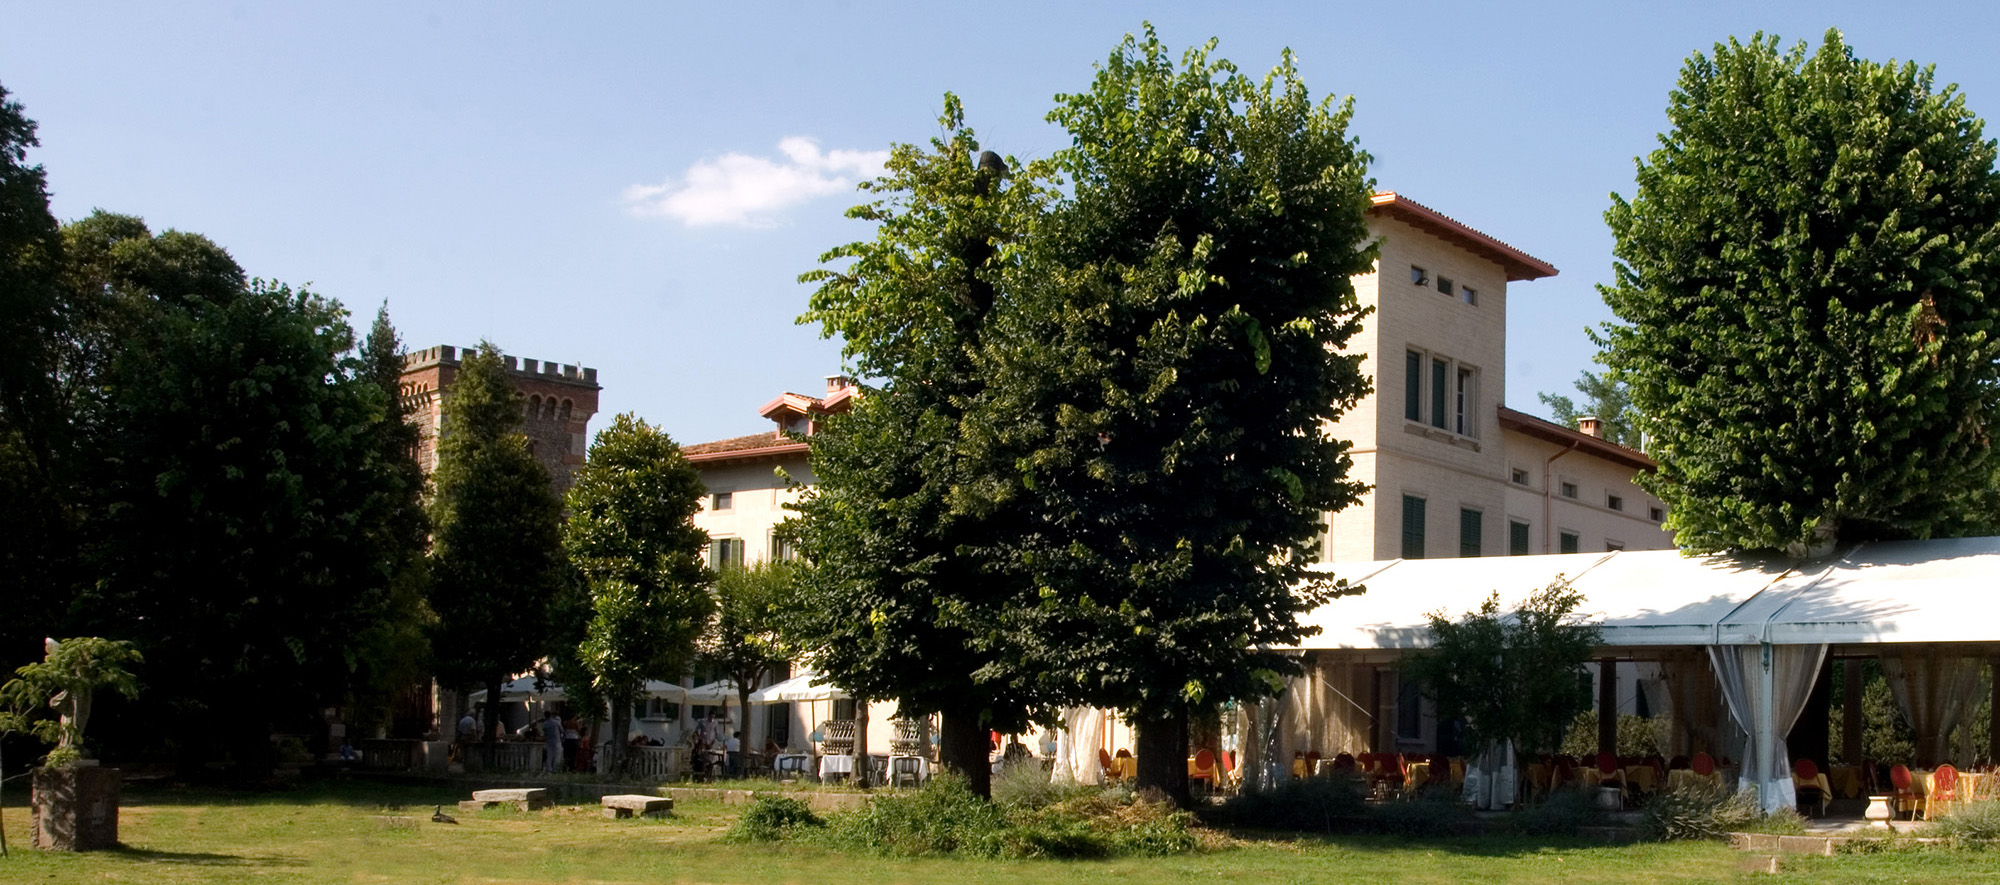 Villa Maggi Ponti location matrimoni Cassano d'Adda